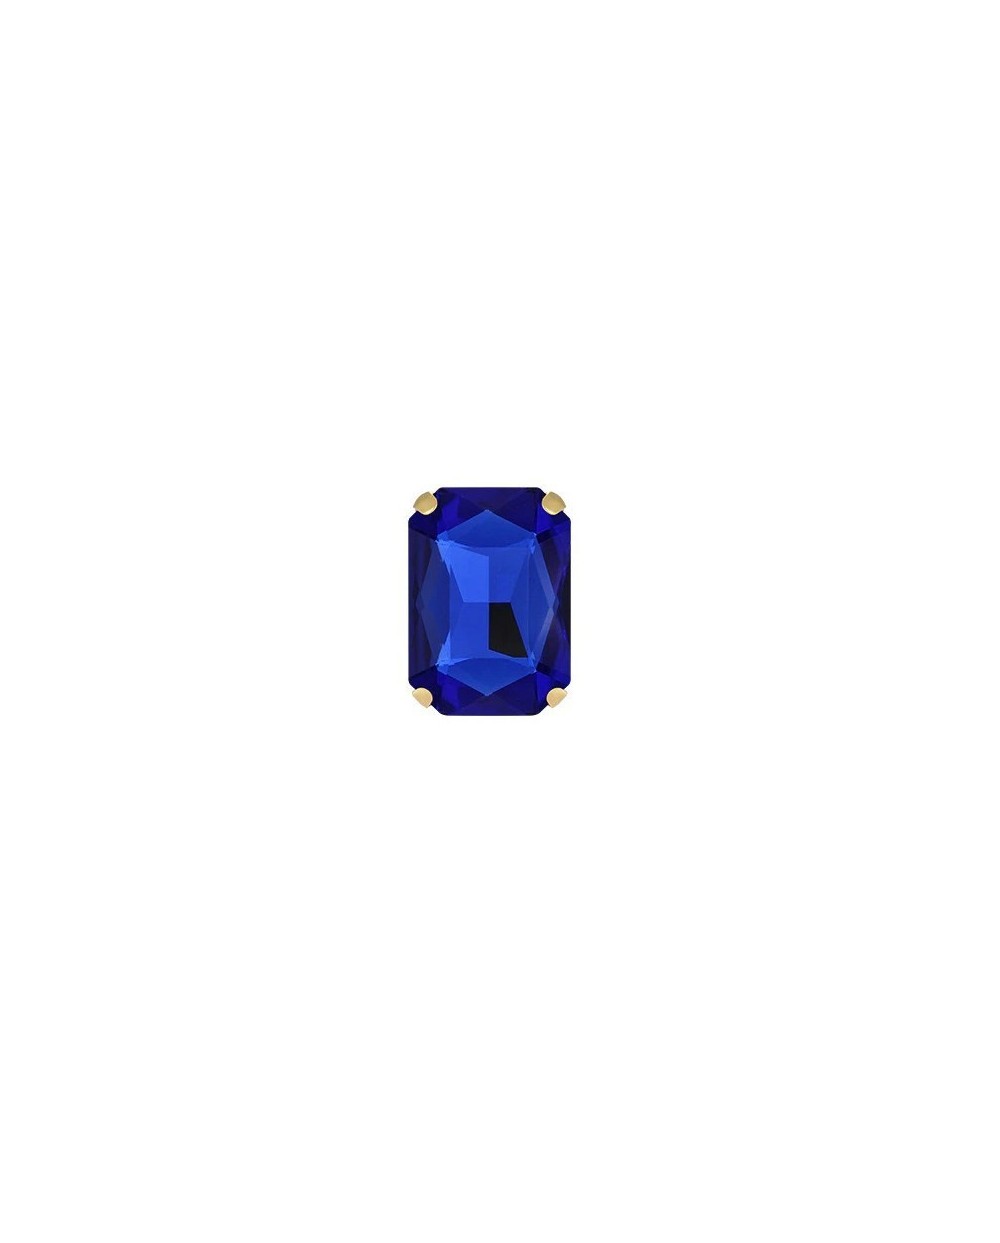 Stačiakampiai prisiuvami kristalai mėlynos sp., 10x14mm, 1 vnt.